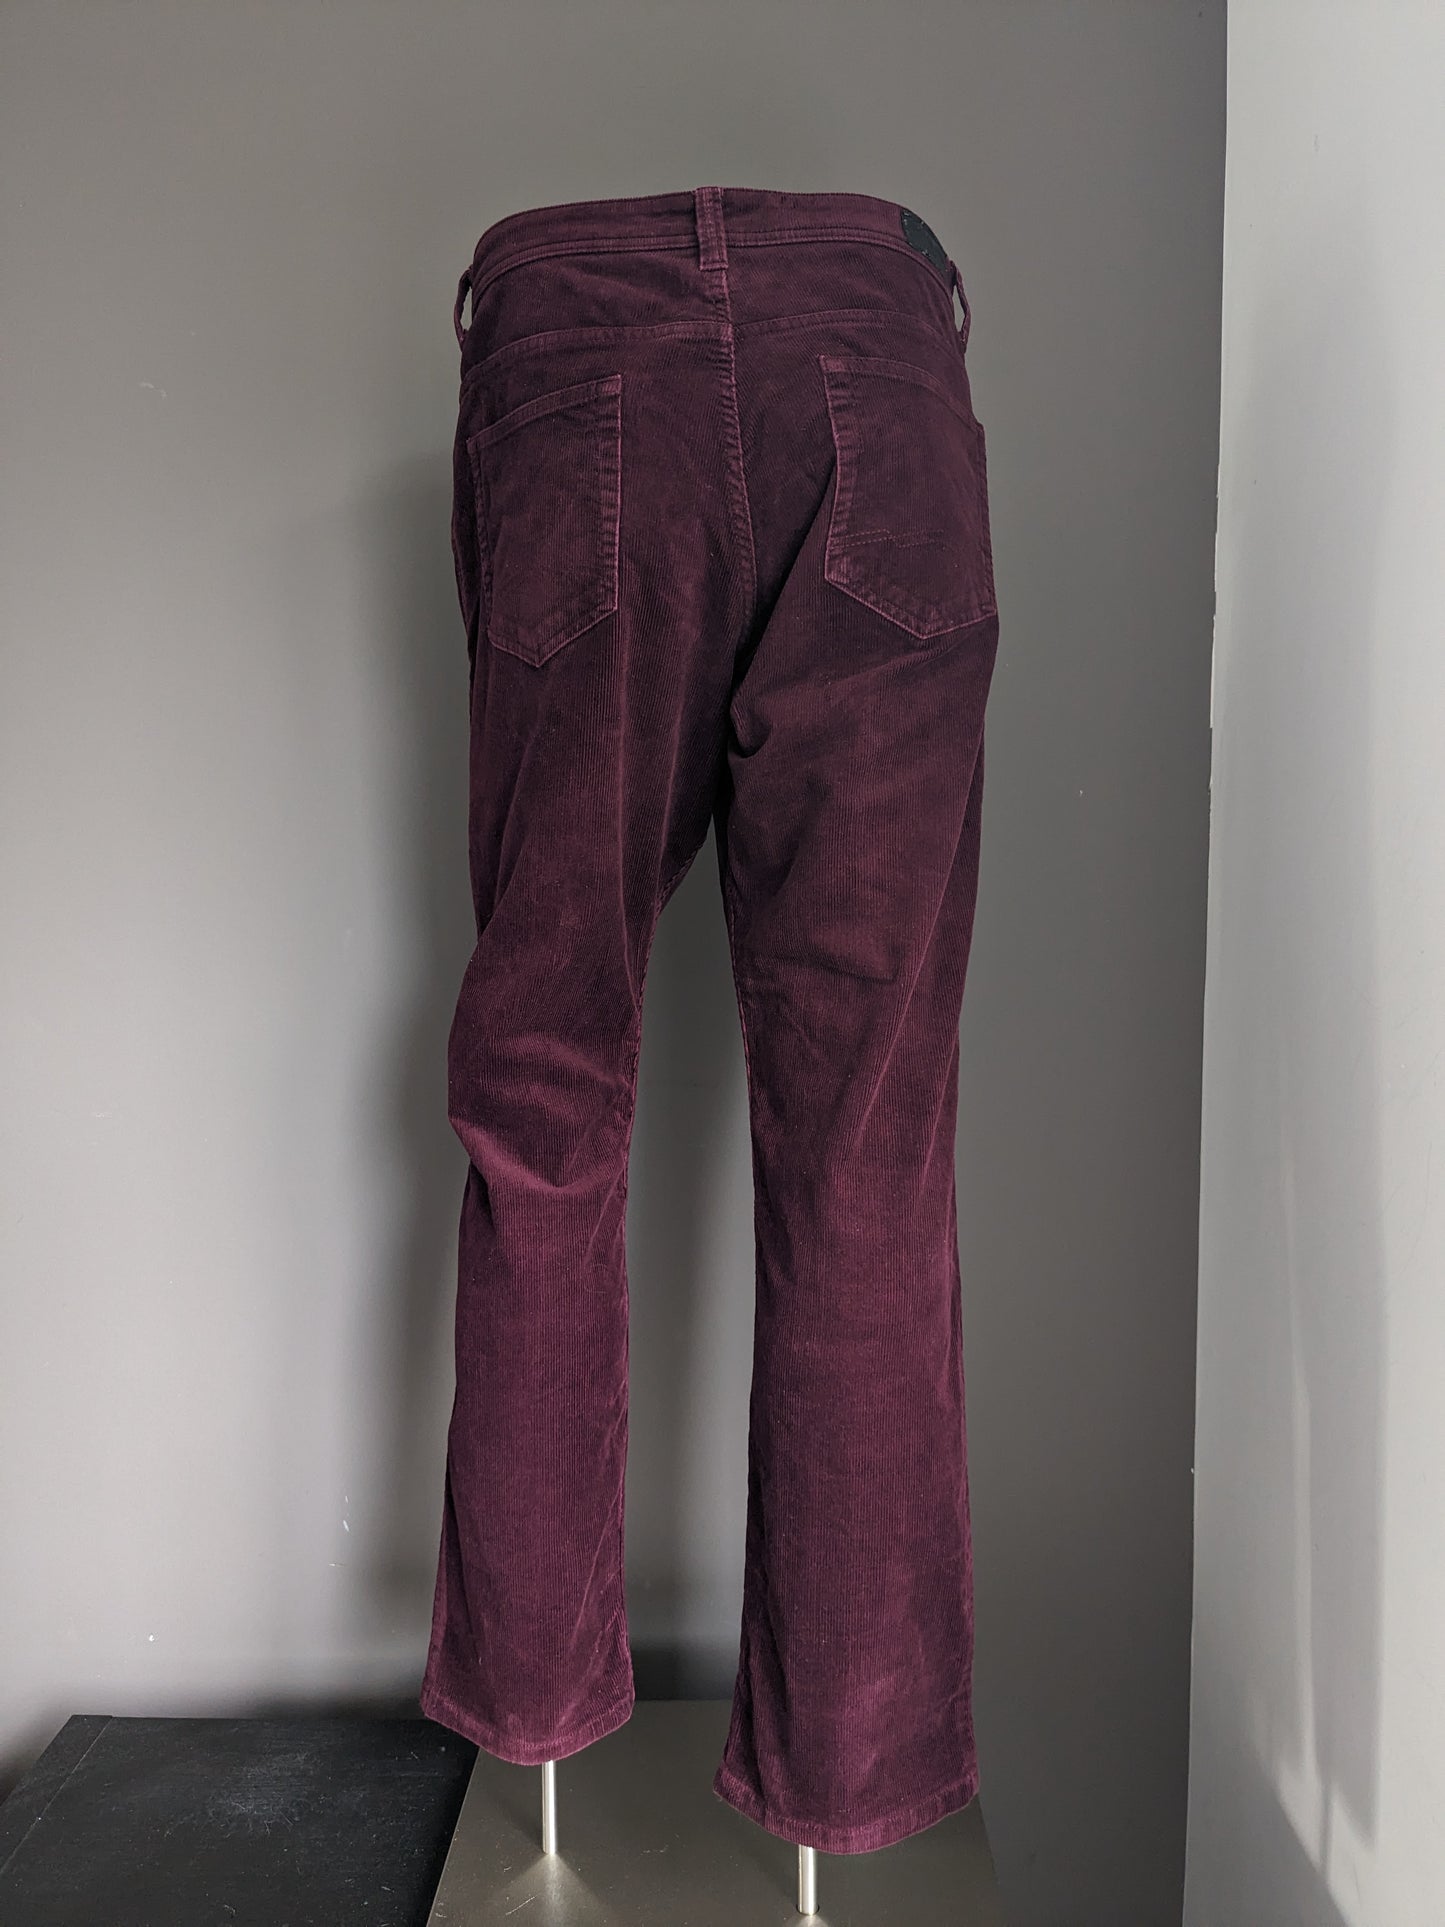 Canda Rib Pantalon. Bordeaux coloré. Taille W36 - L32. Extensible.